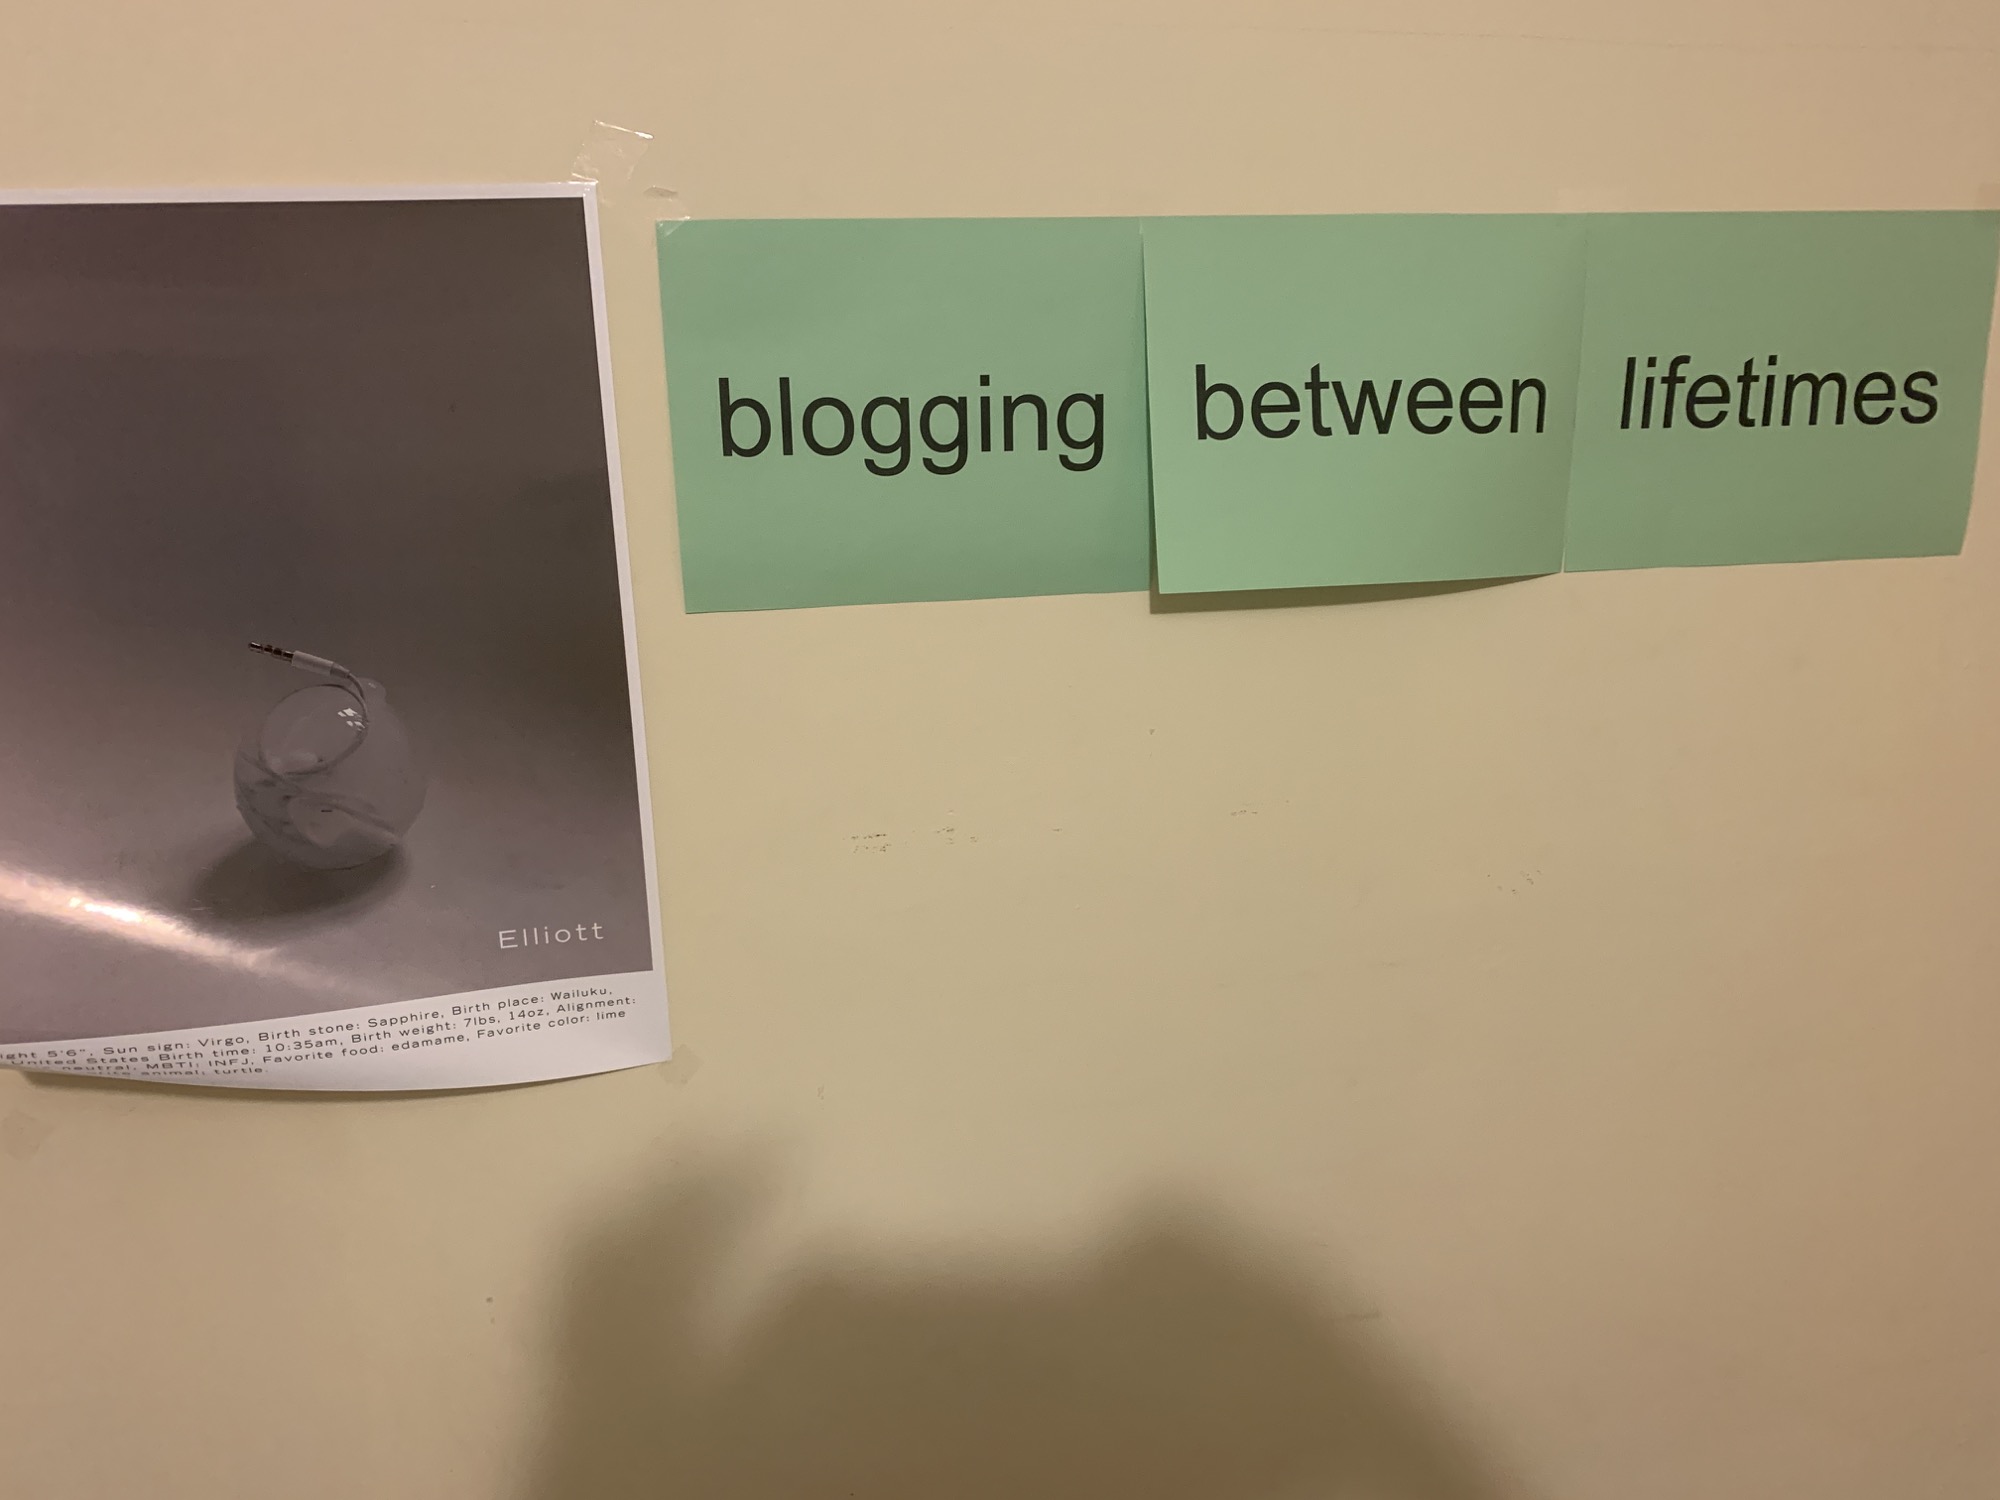 blogging between lifetimes in my room